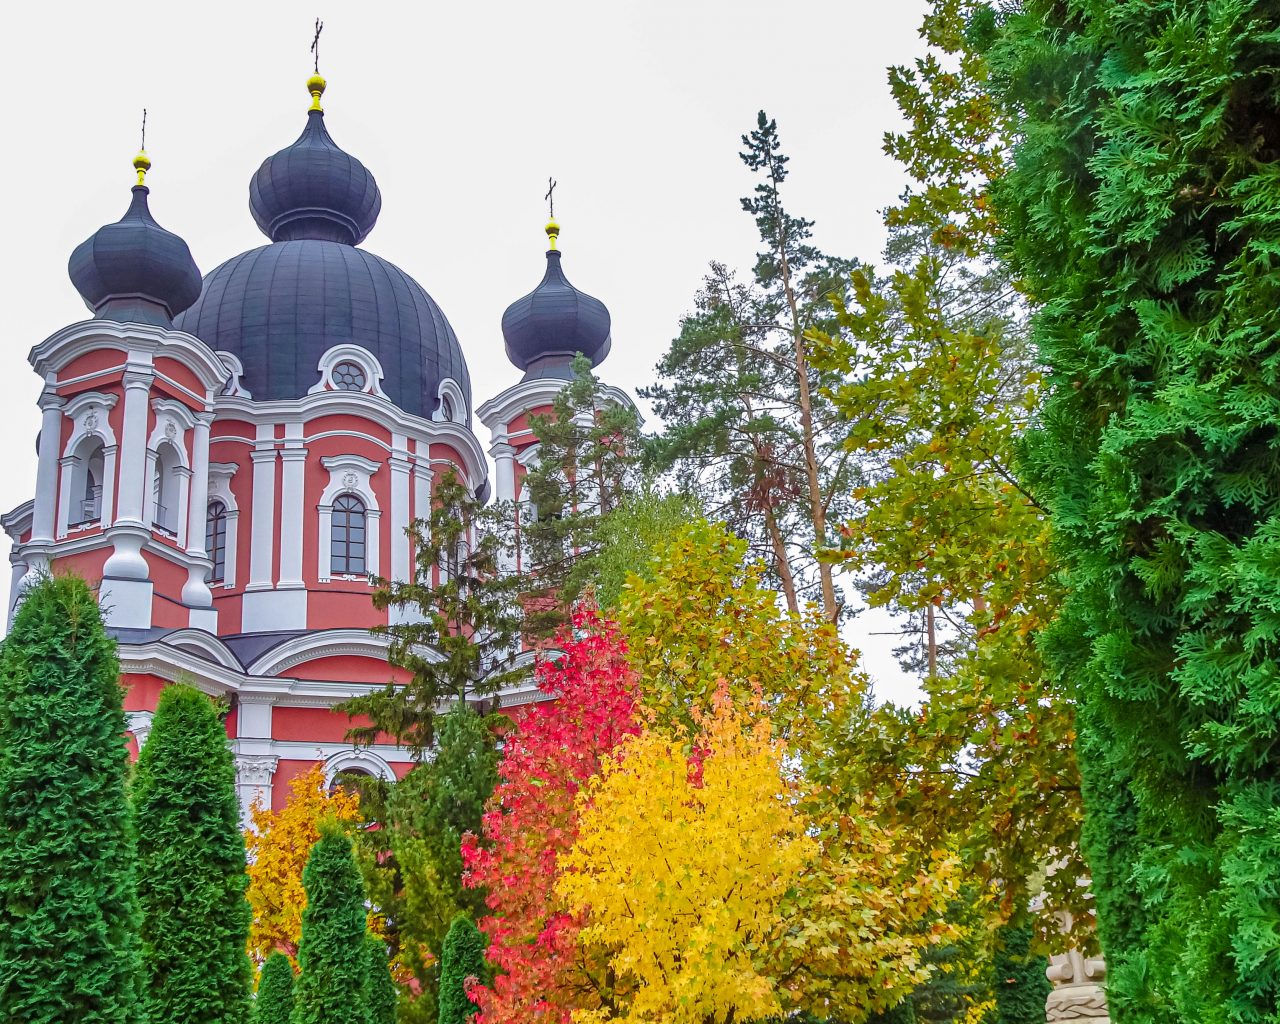 Klooster-met-herfstkleuren-moldavië